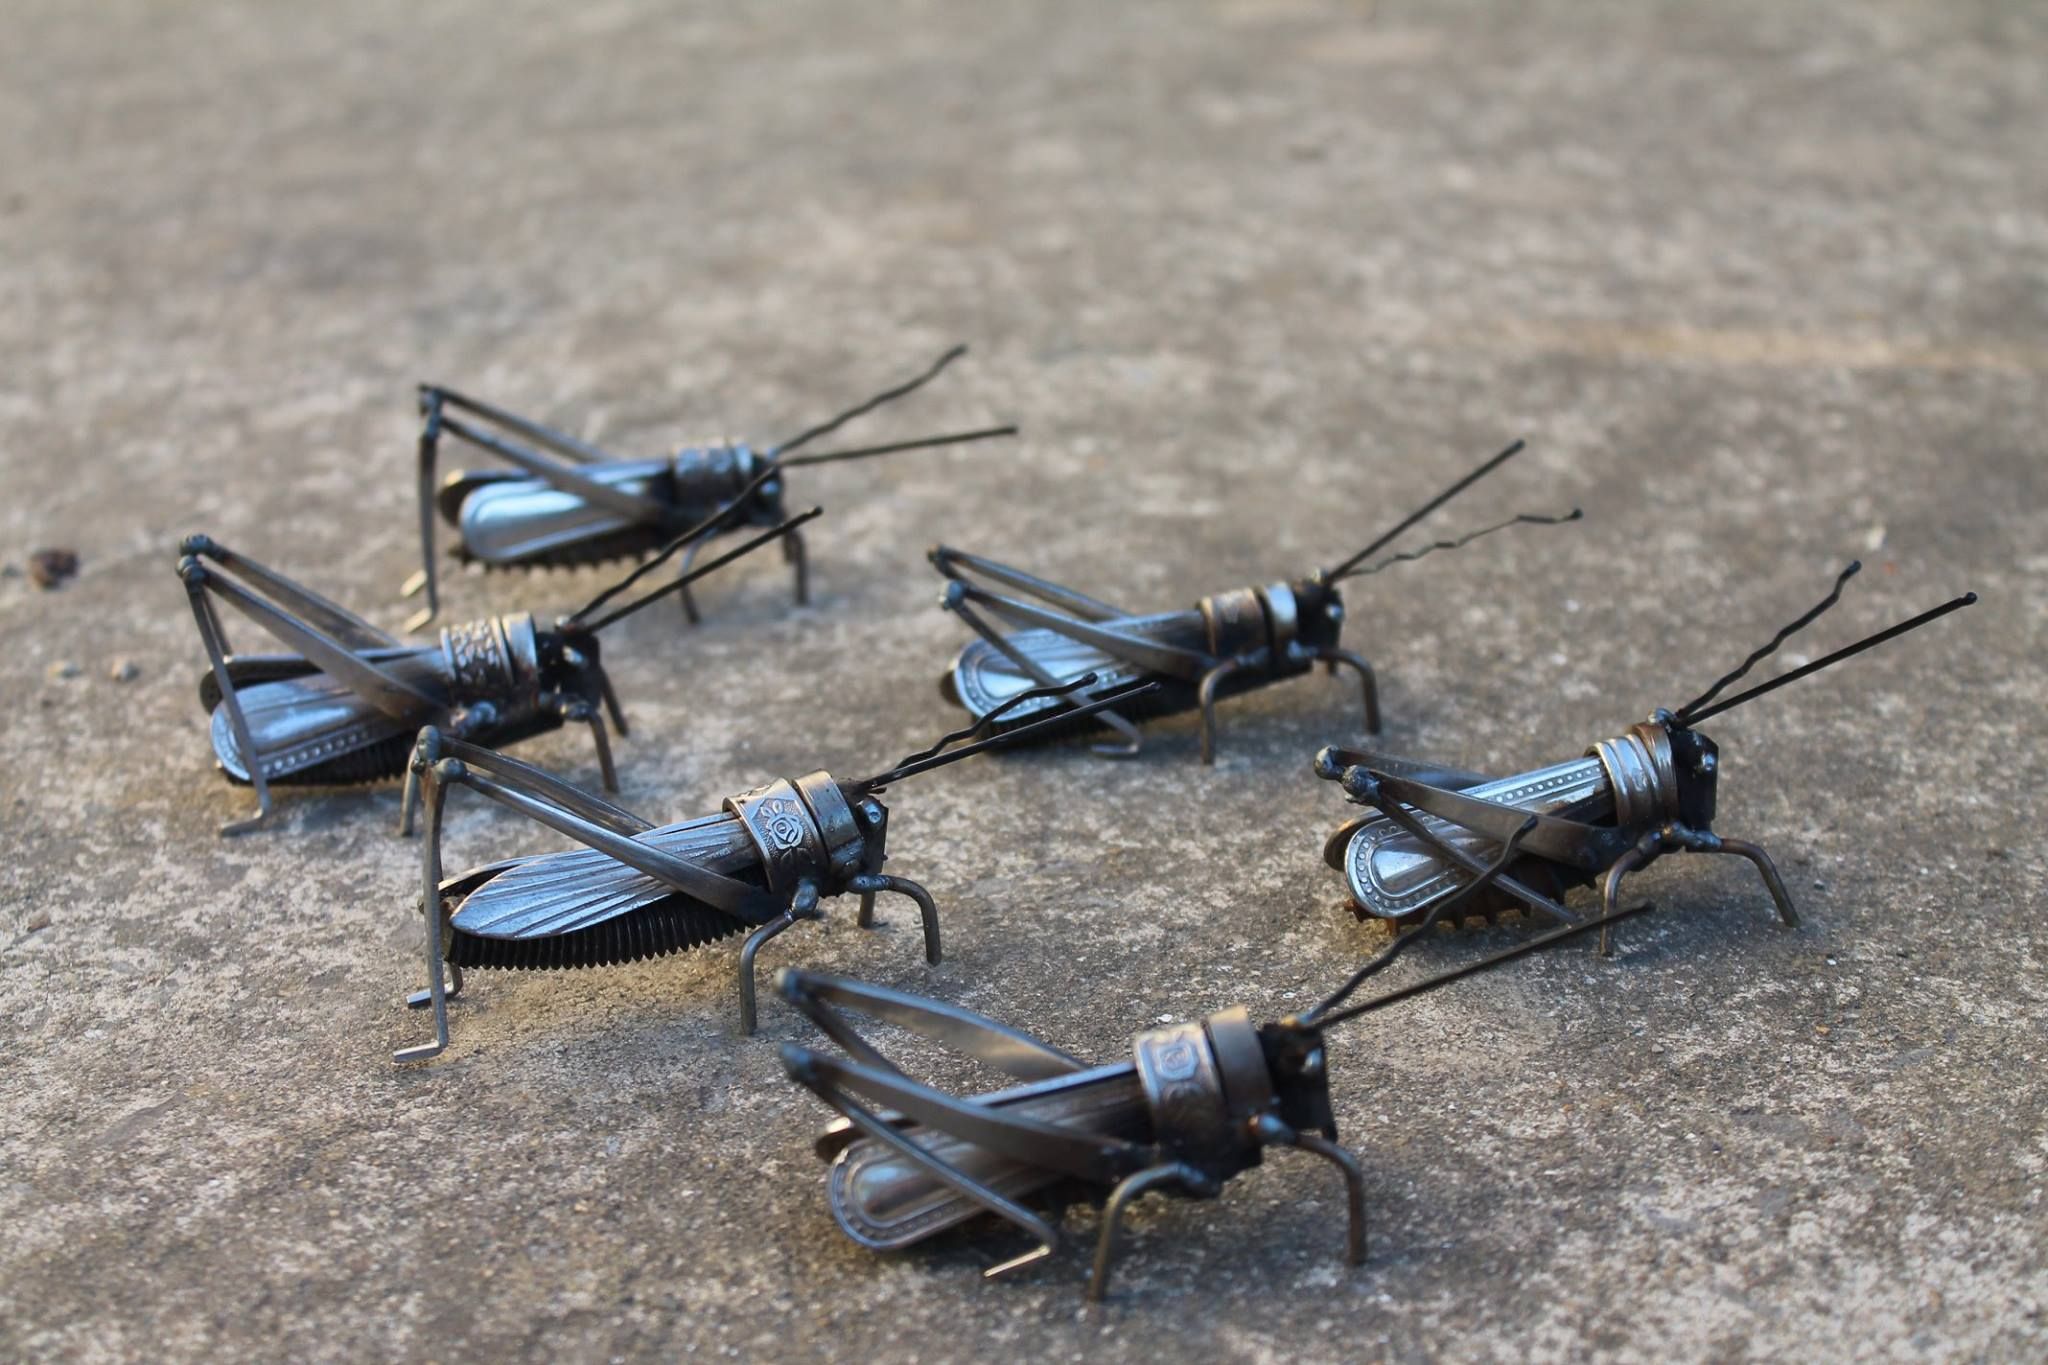 grasshopper, man made, sculpture, cricket (animal), scrap metal art